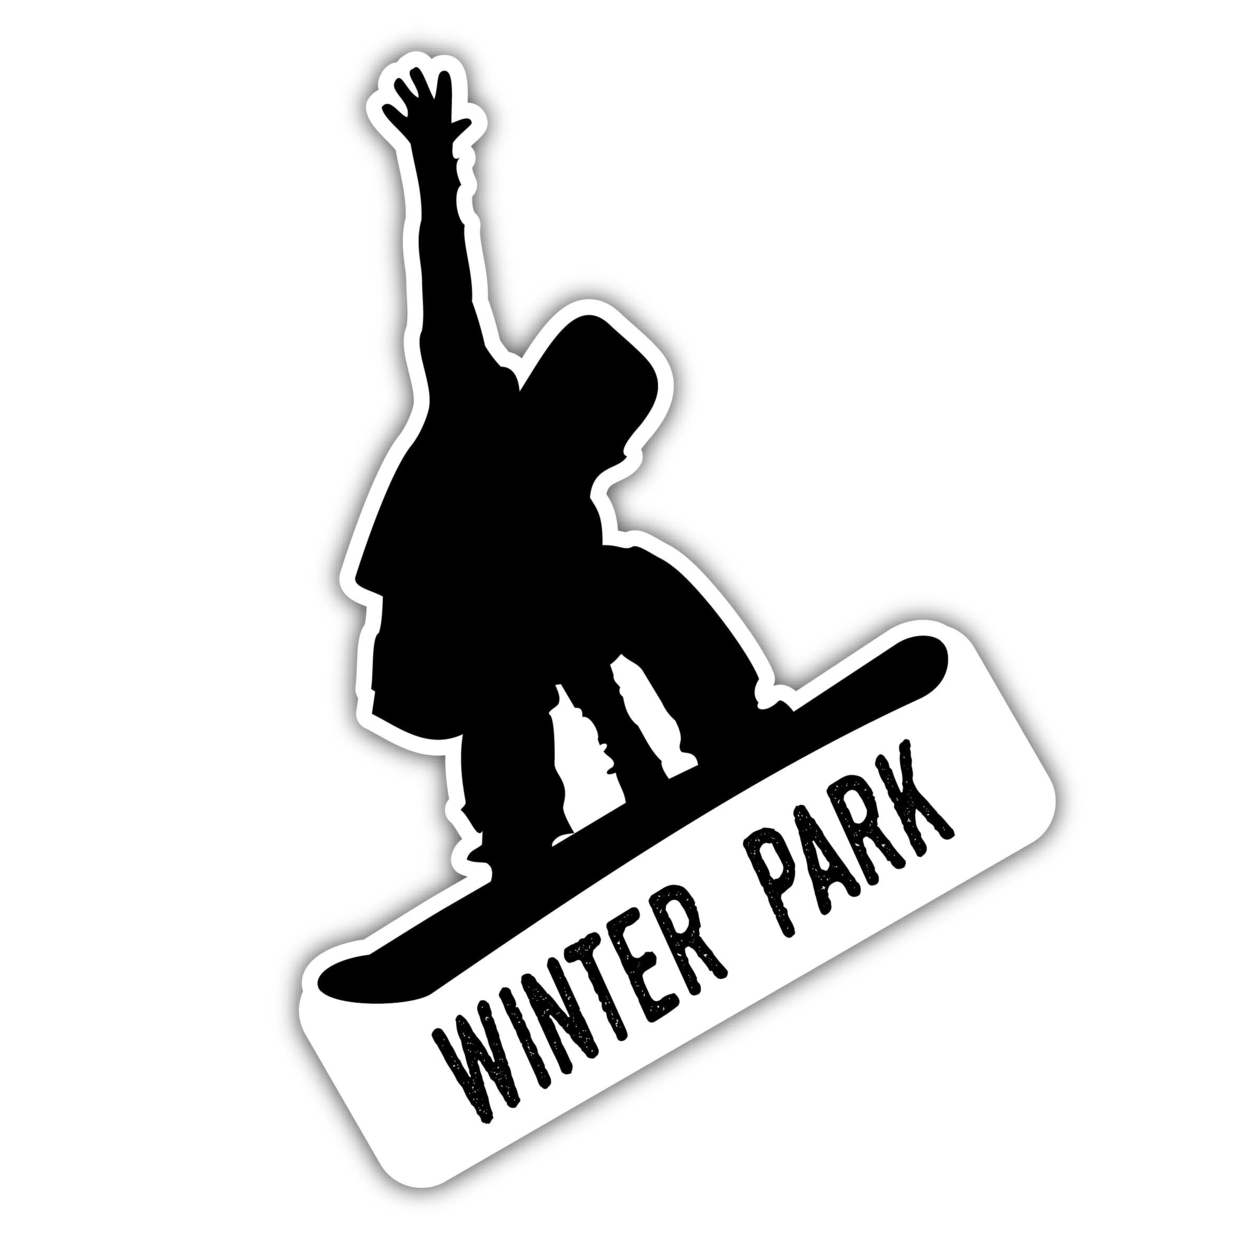 Winter Park Colorado Ski Adventures Souvenir 4 Inch Vinyl Decal Sticker Mountain Design